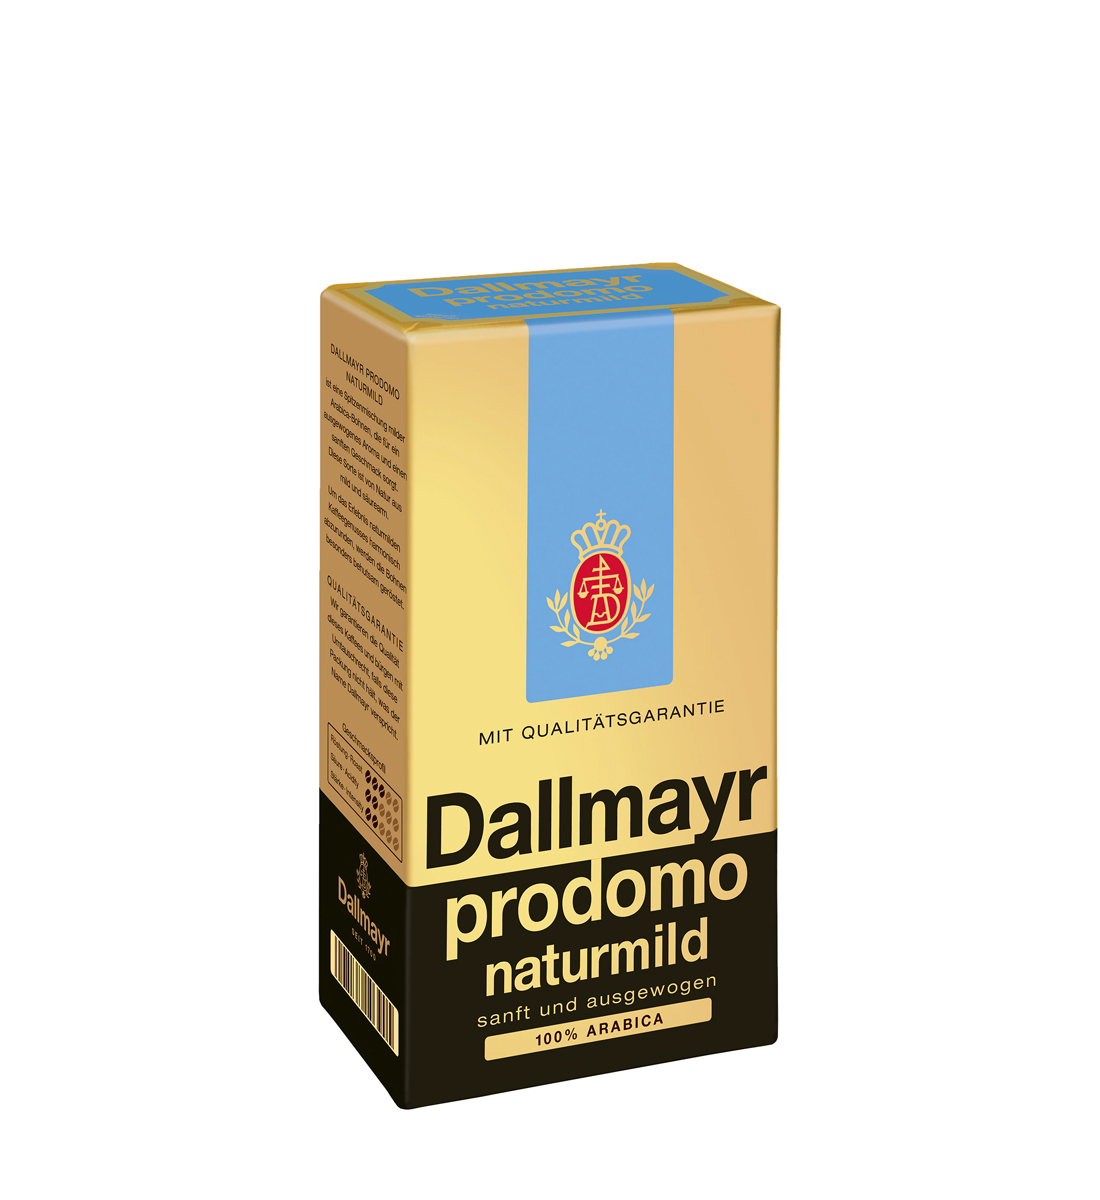 Dallmayr Prodomo Naturmild cafea macinata 500 g